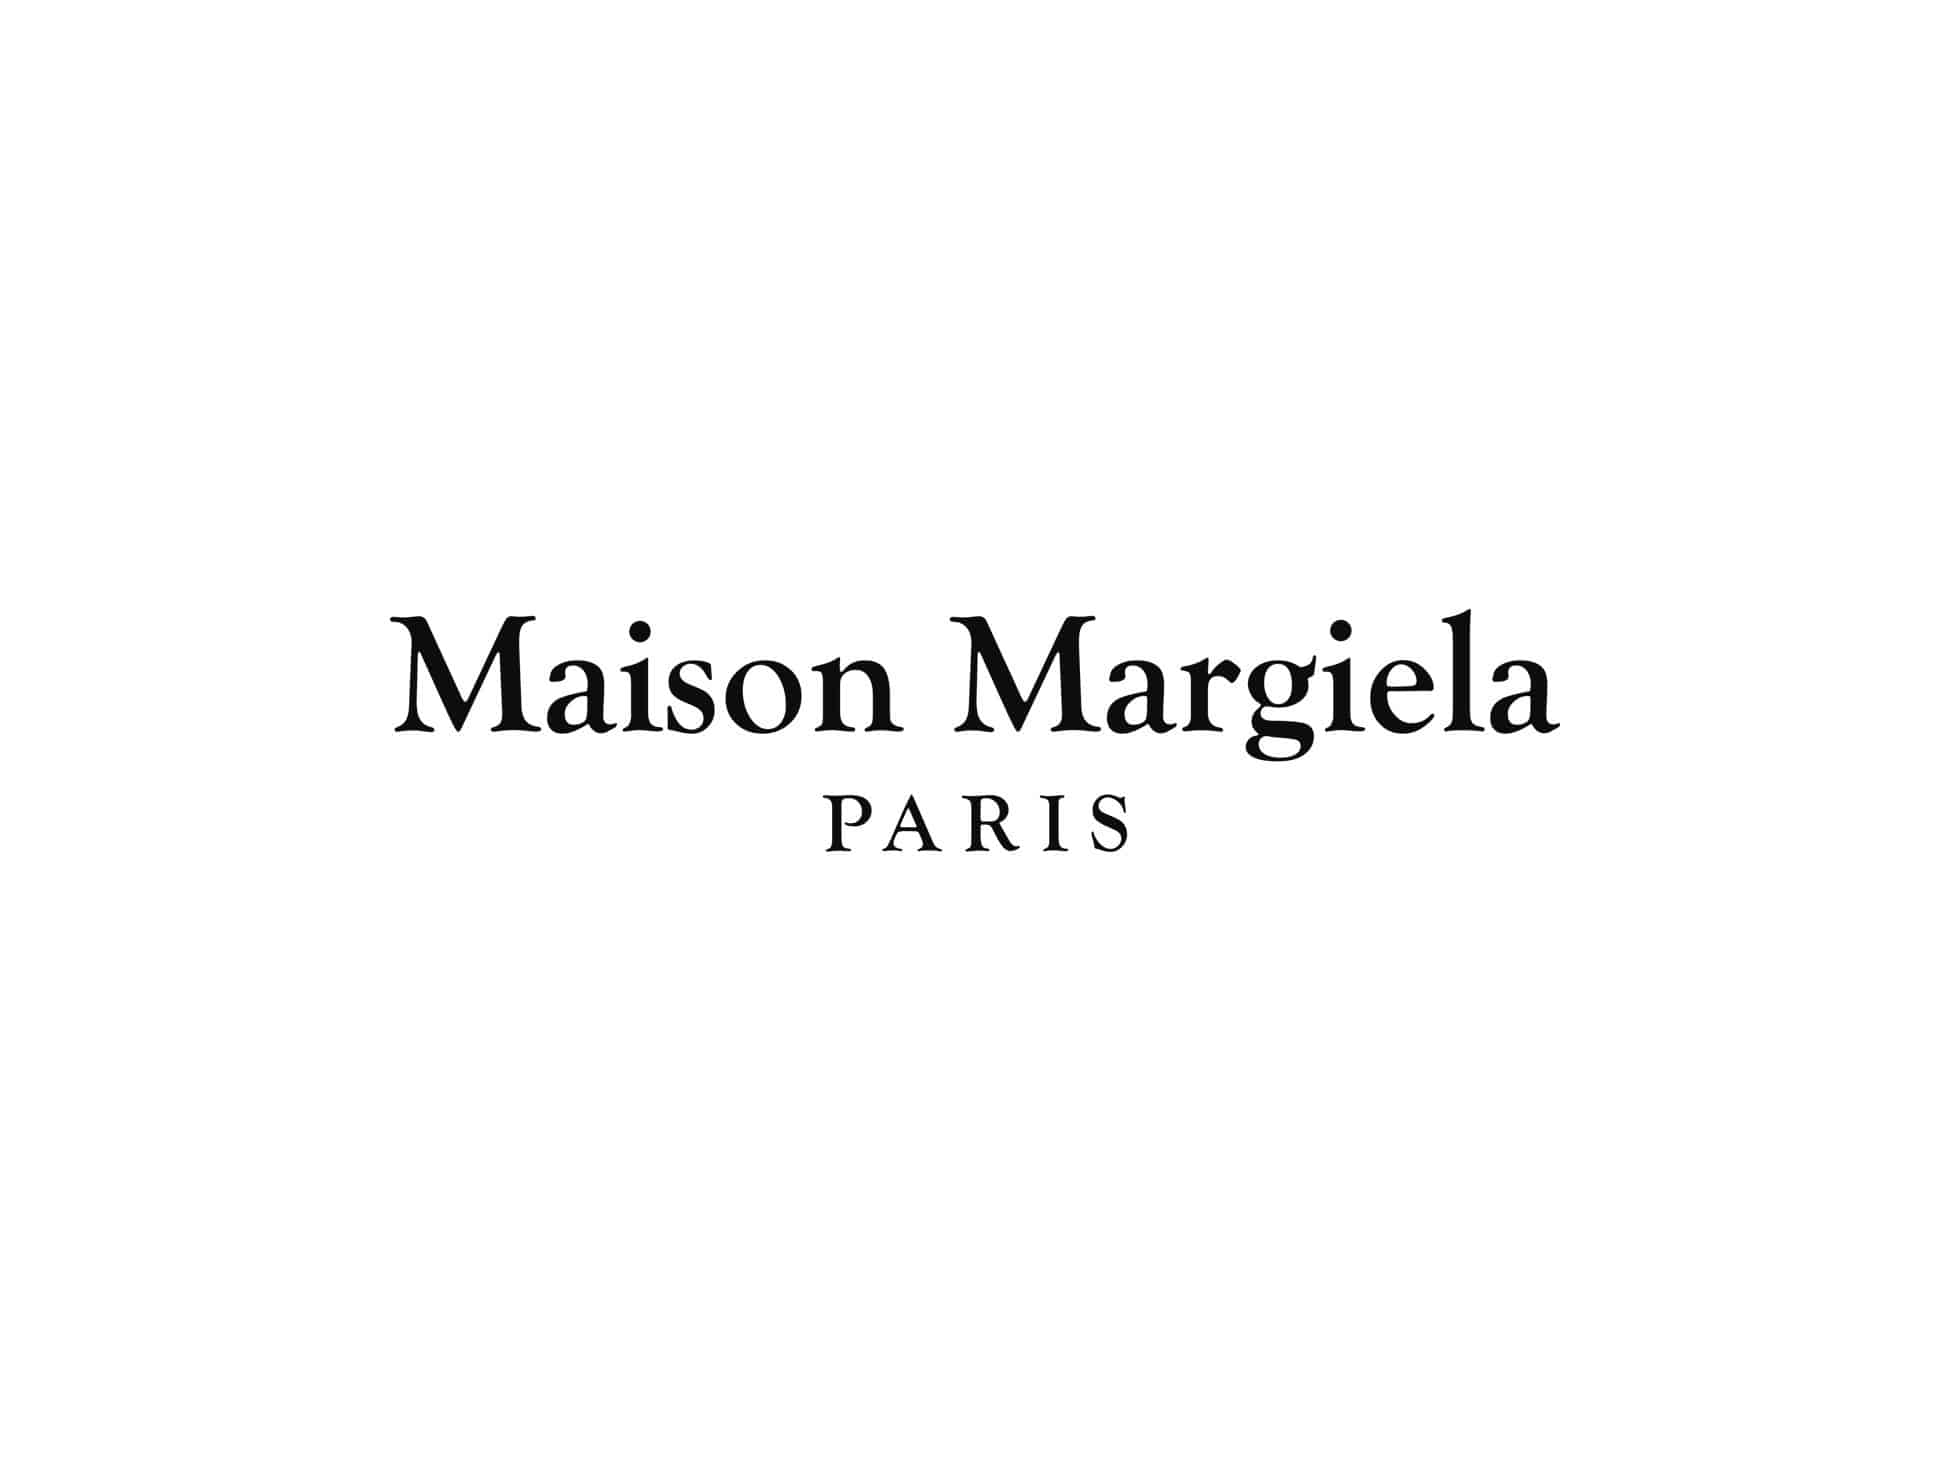 Maison Margiela Pop Up Event for Men